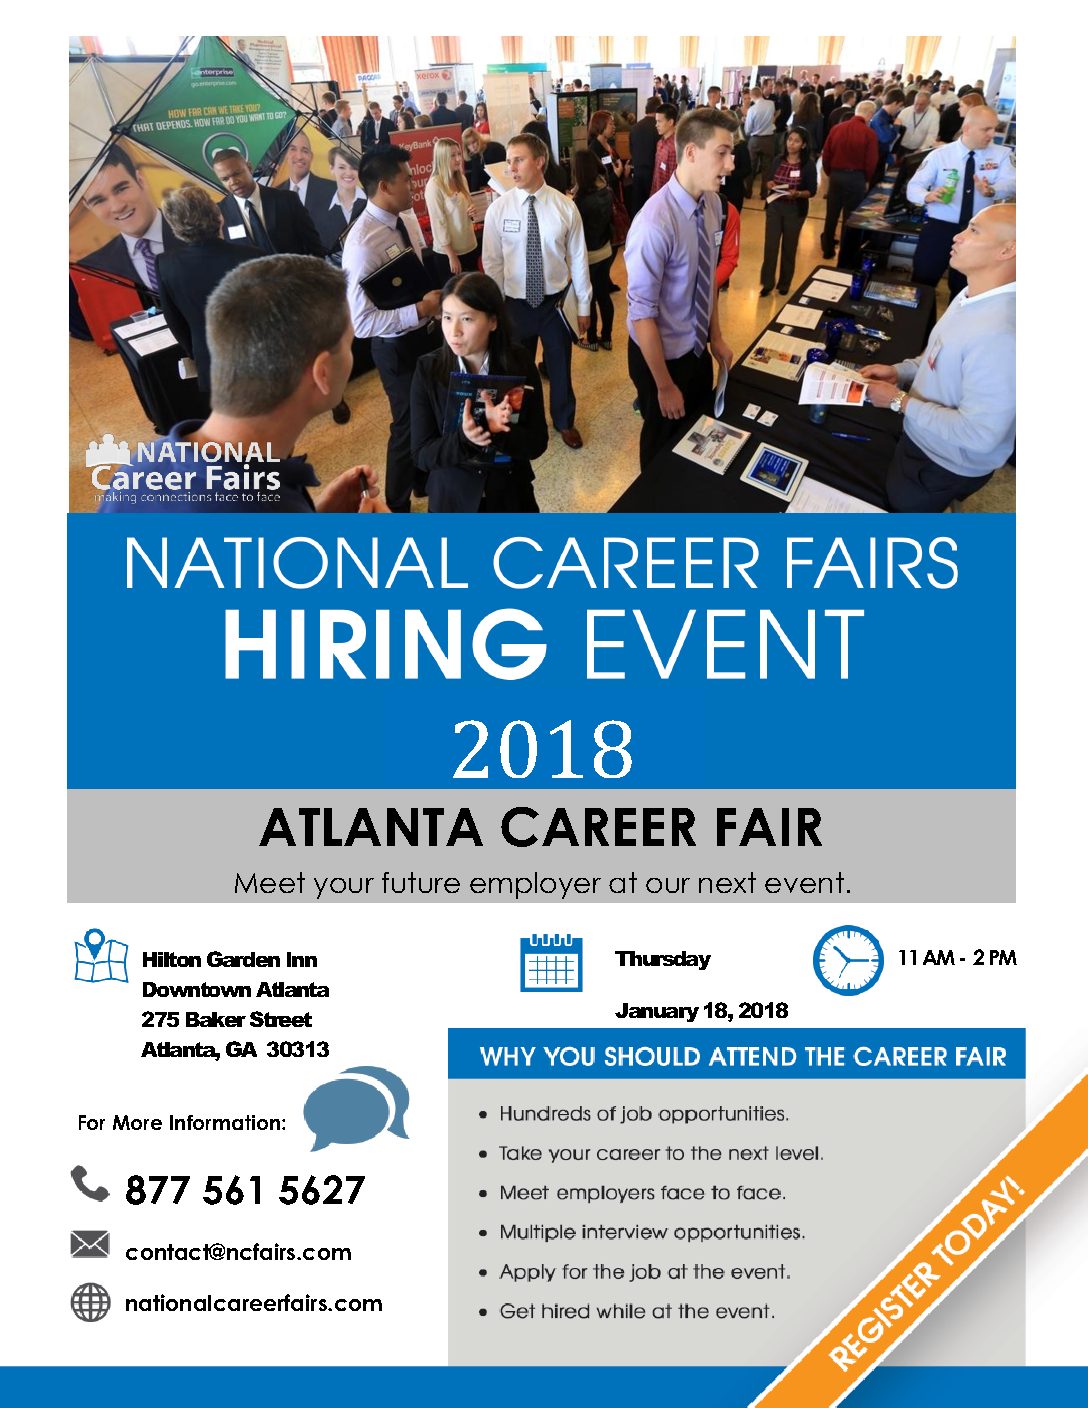 Atlanta Career Fair